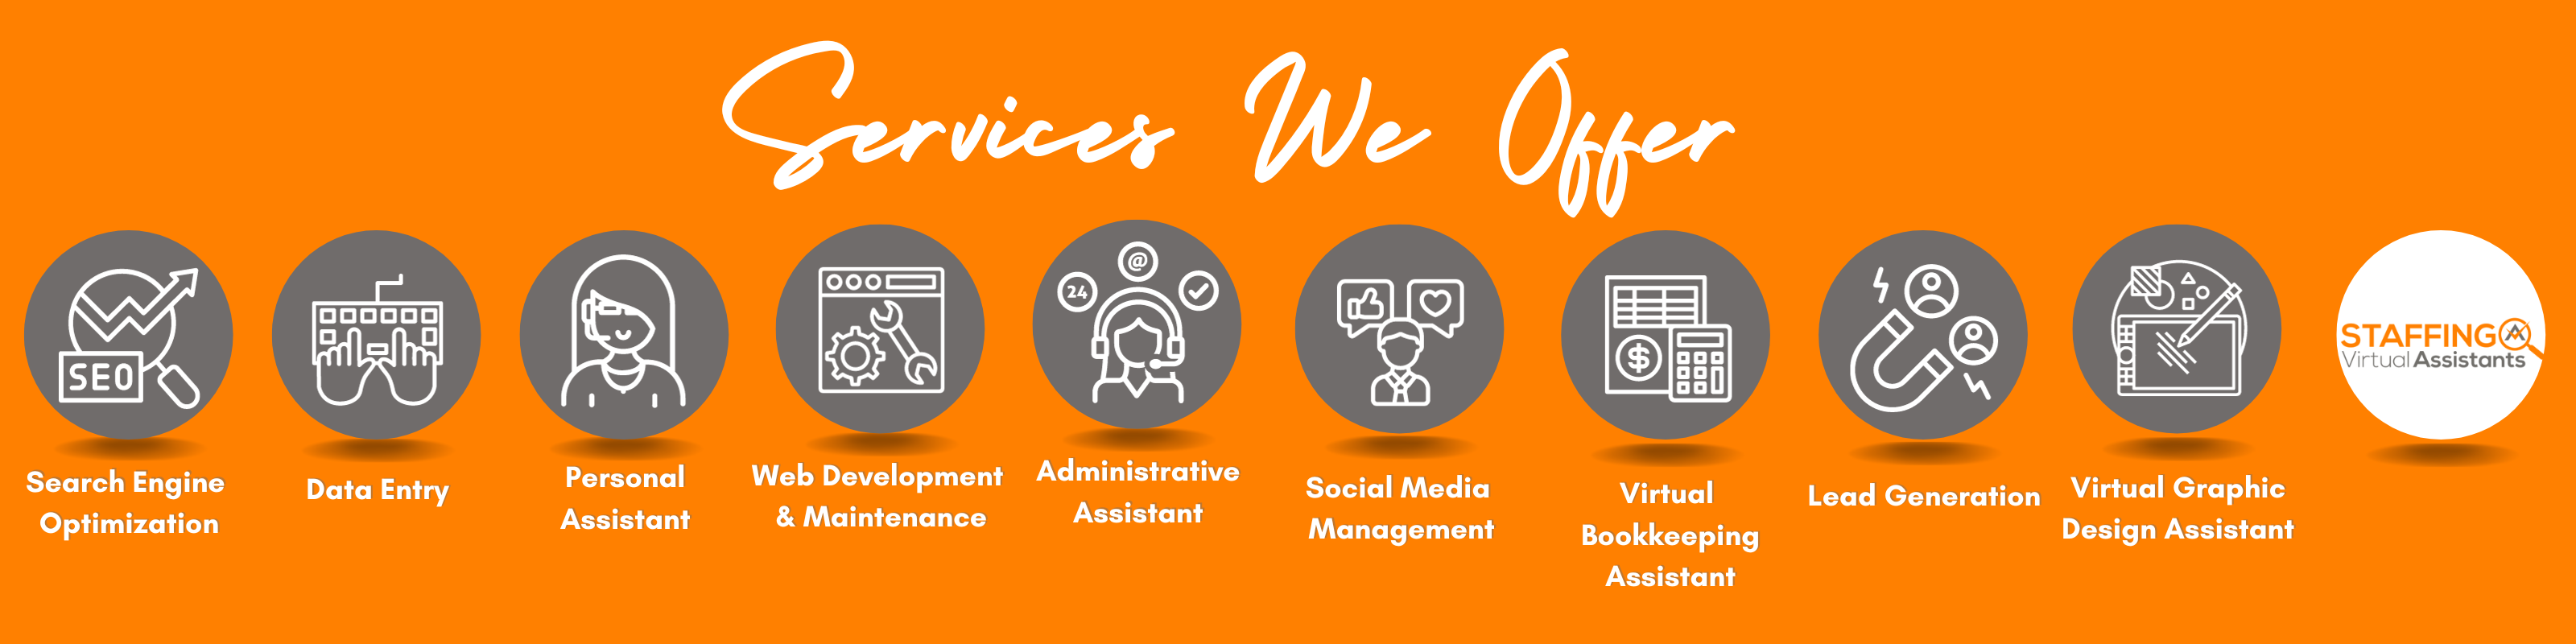 services we offer, longer